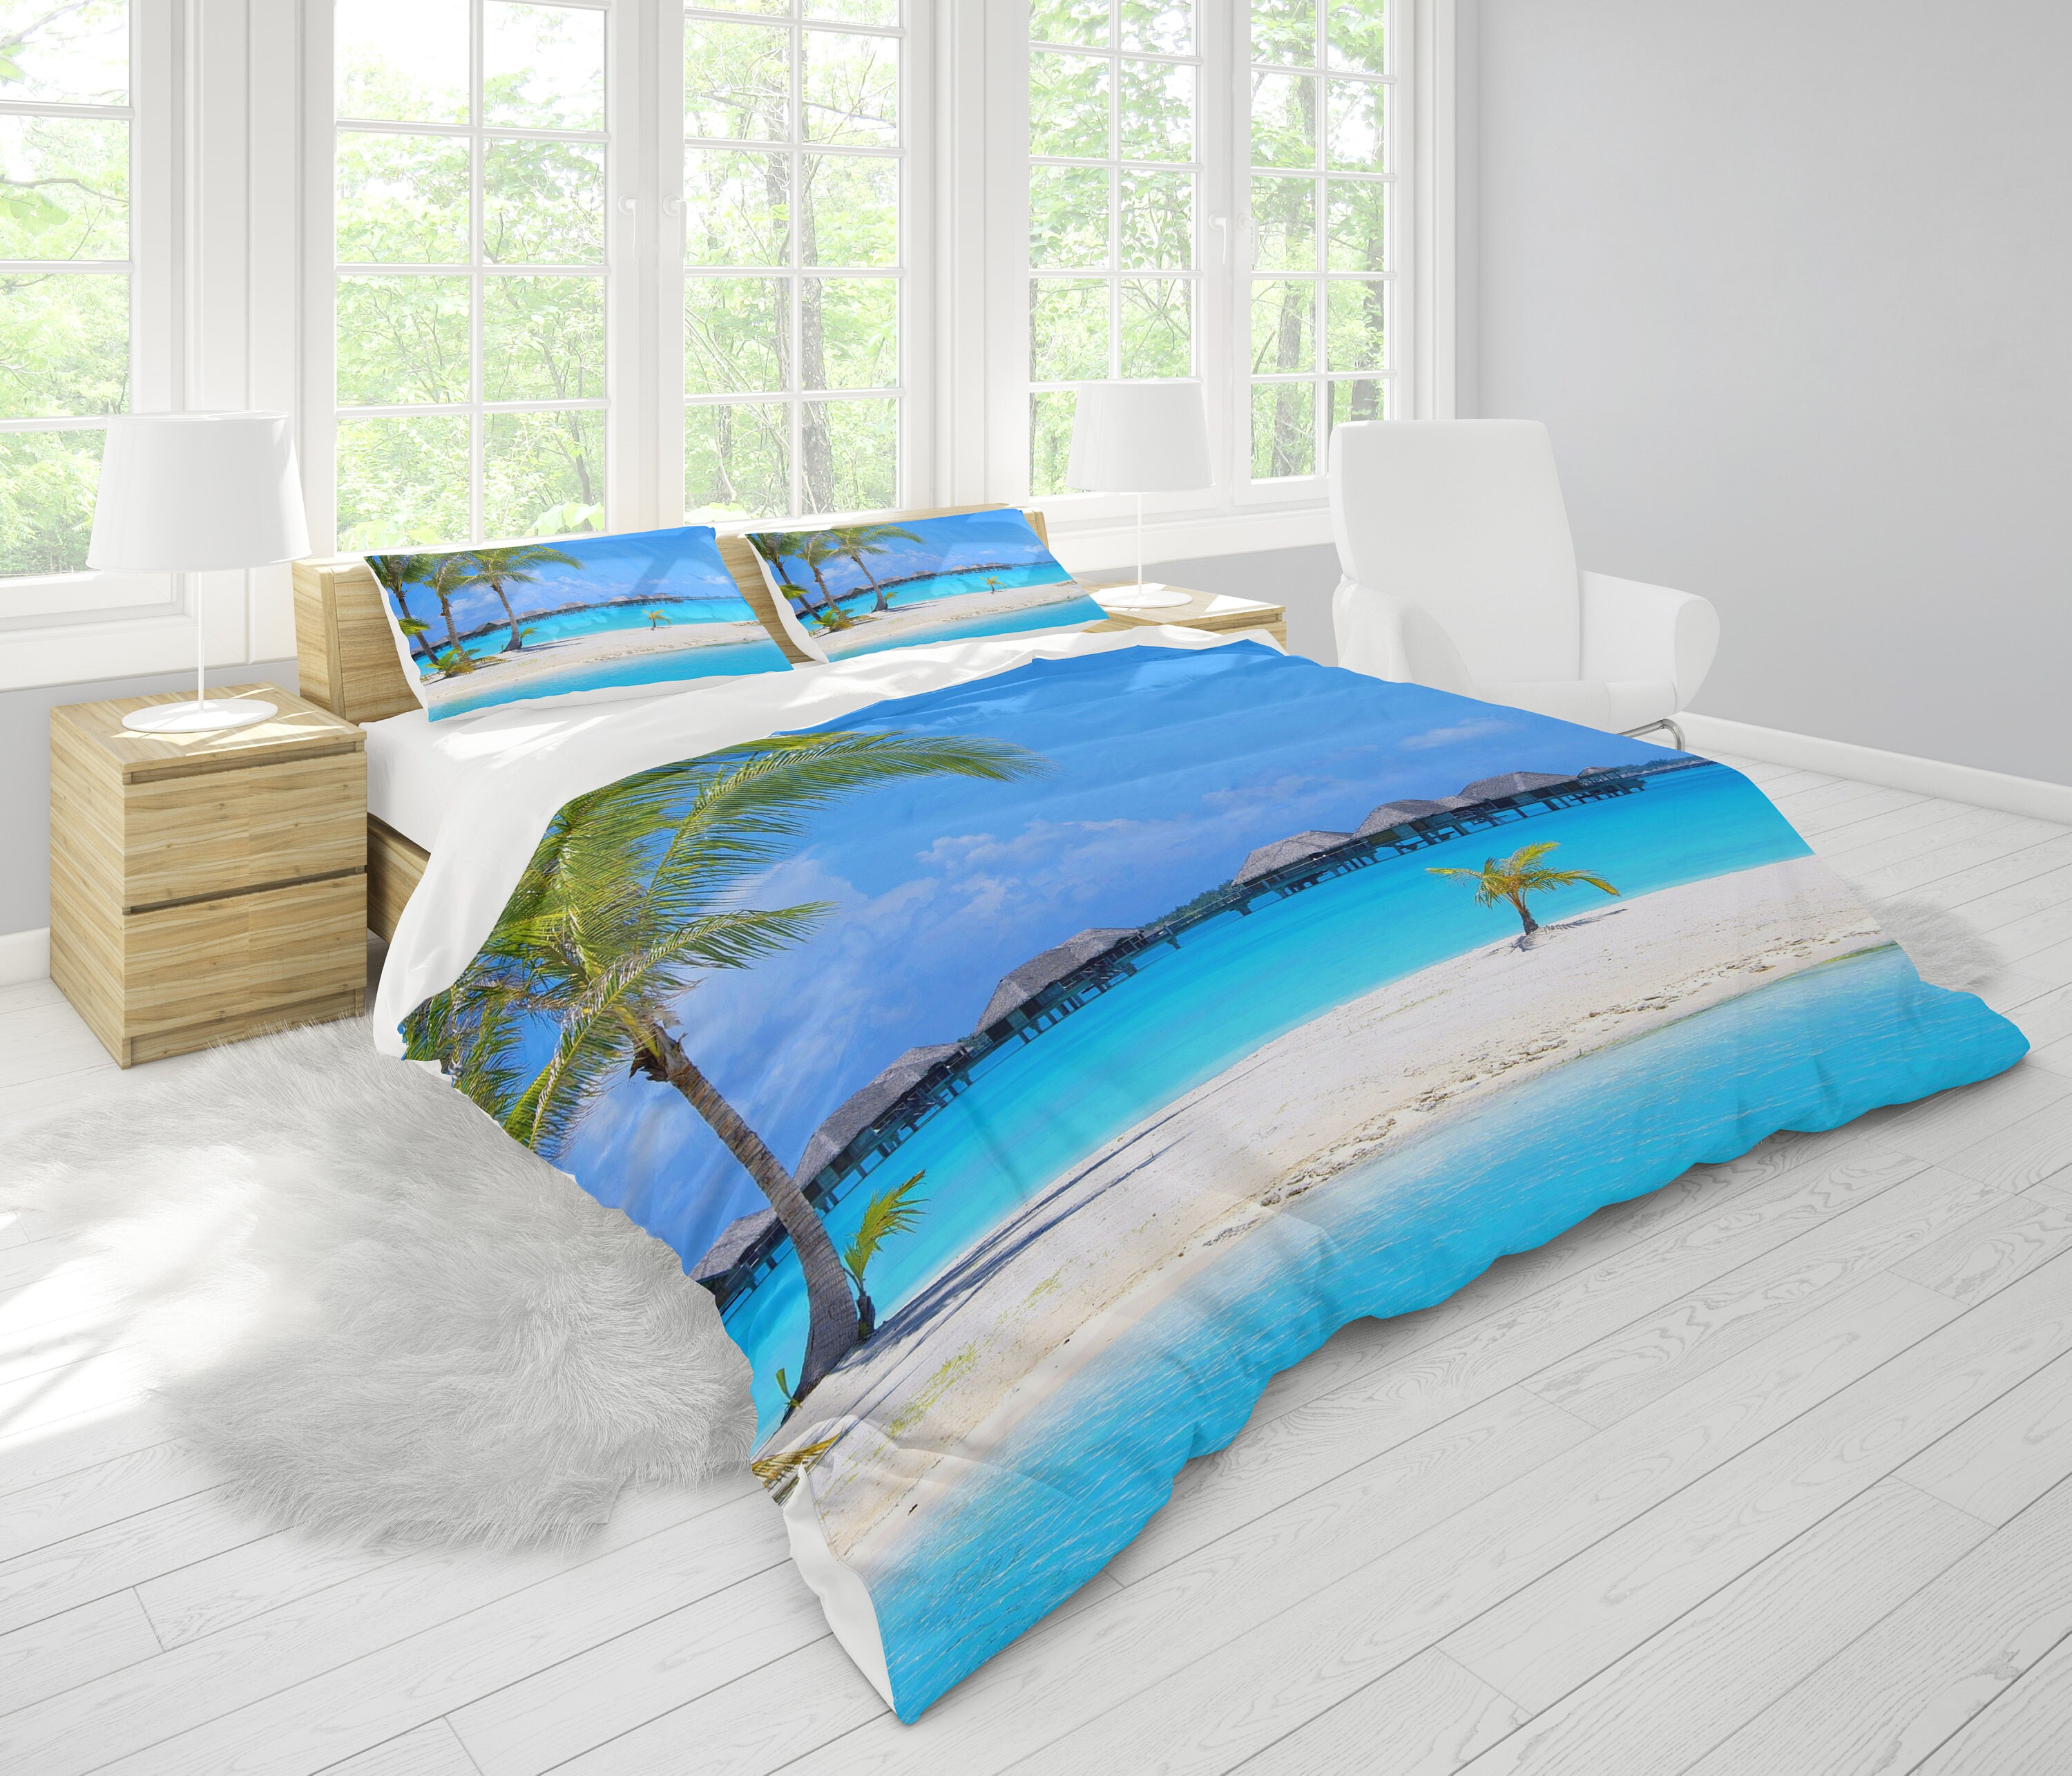 Island Comforter Or Duvet Cover Beach Comforters Beachy Duvet Etsy